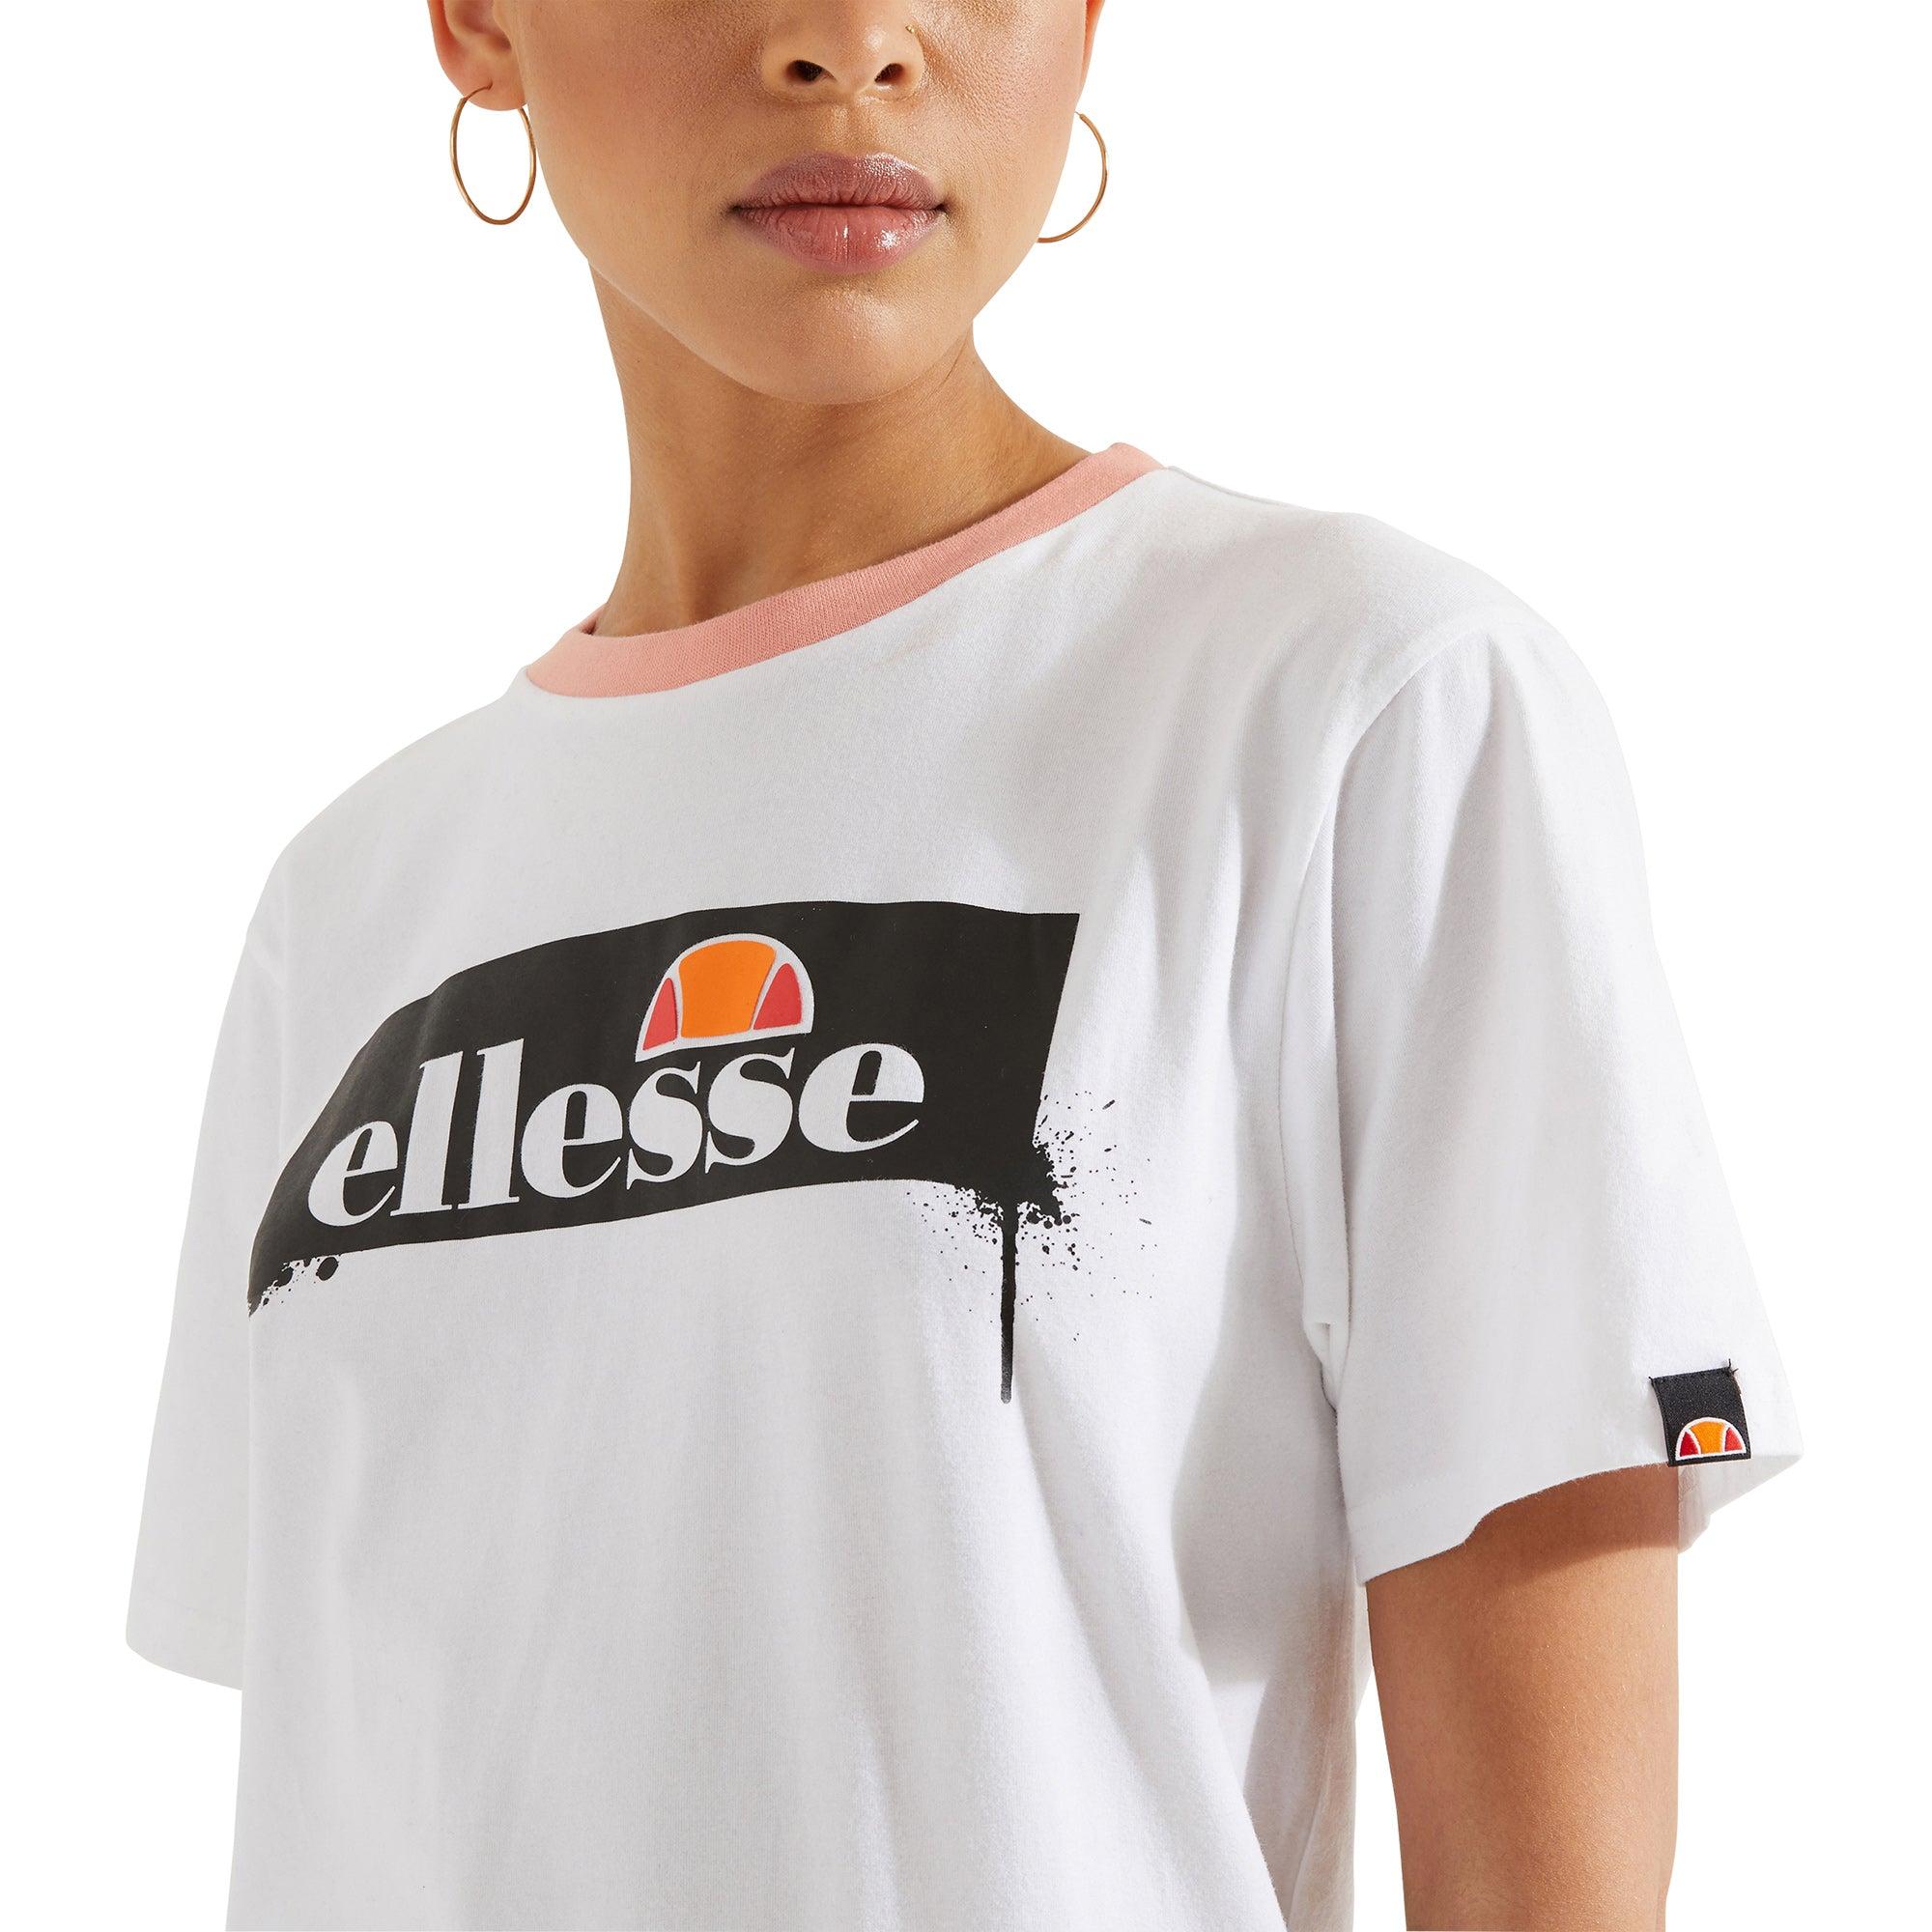 Áo thun tay ngắn thời trang nữ Ellesse Play-Sunwave Fade - 620190